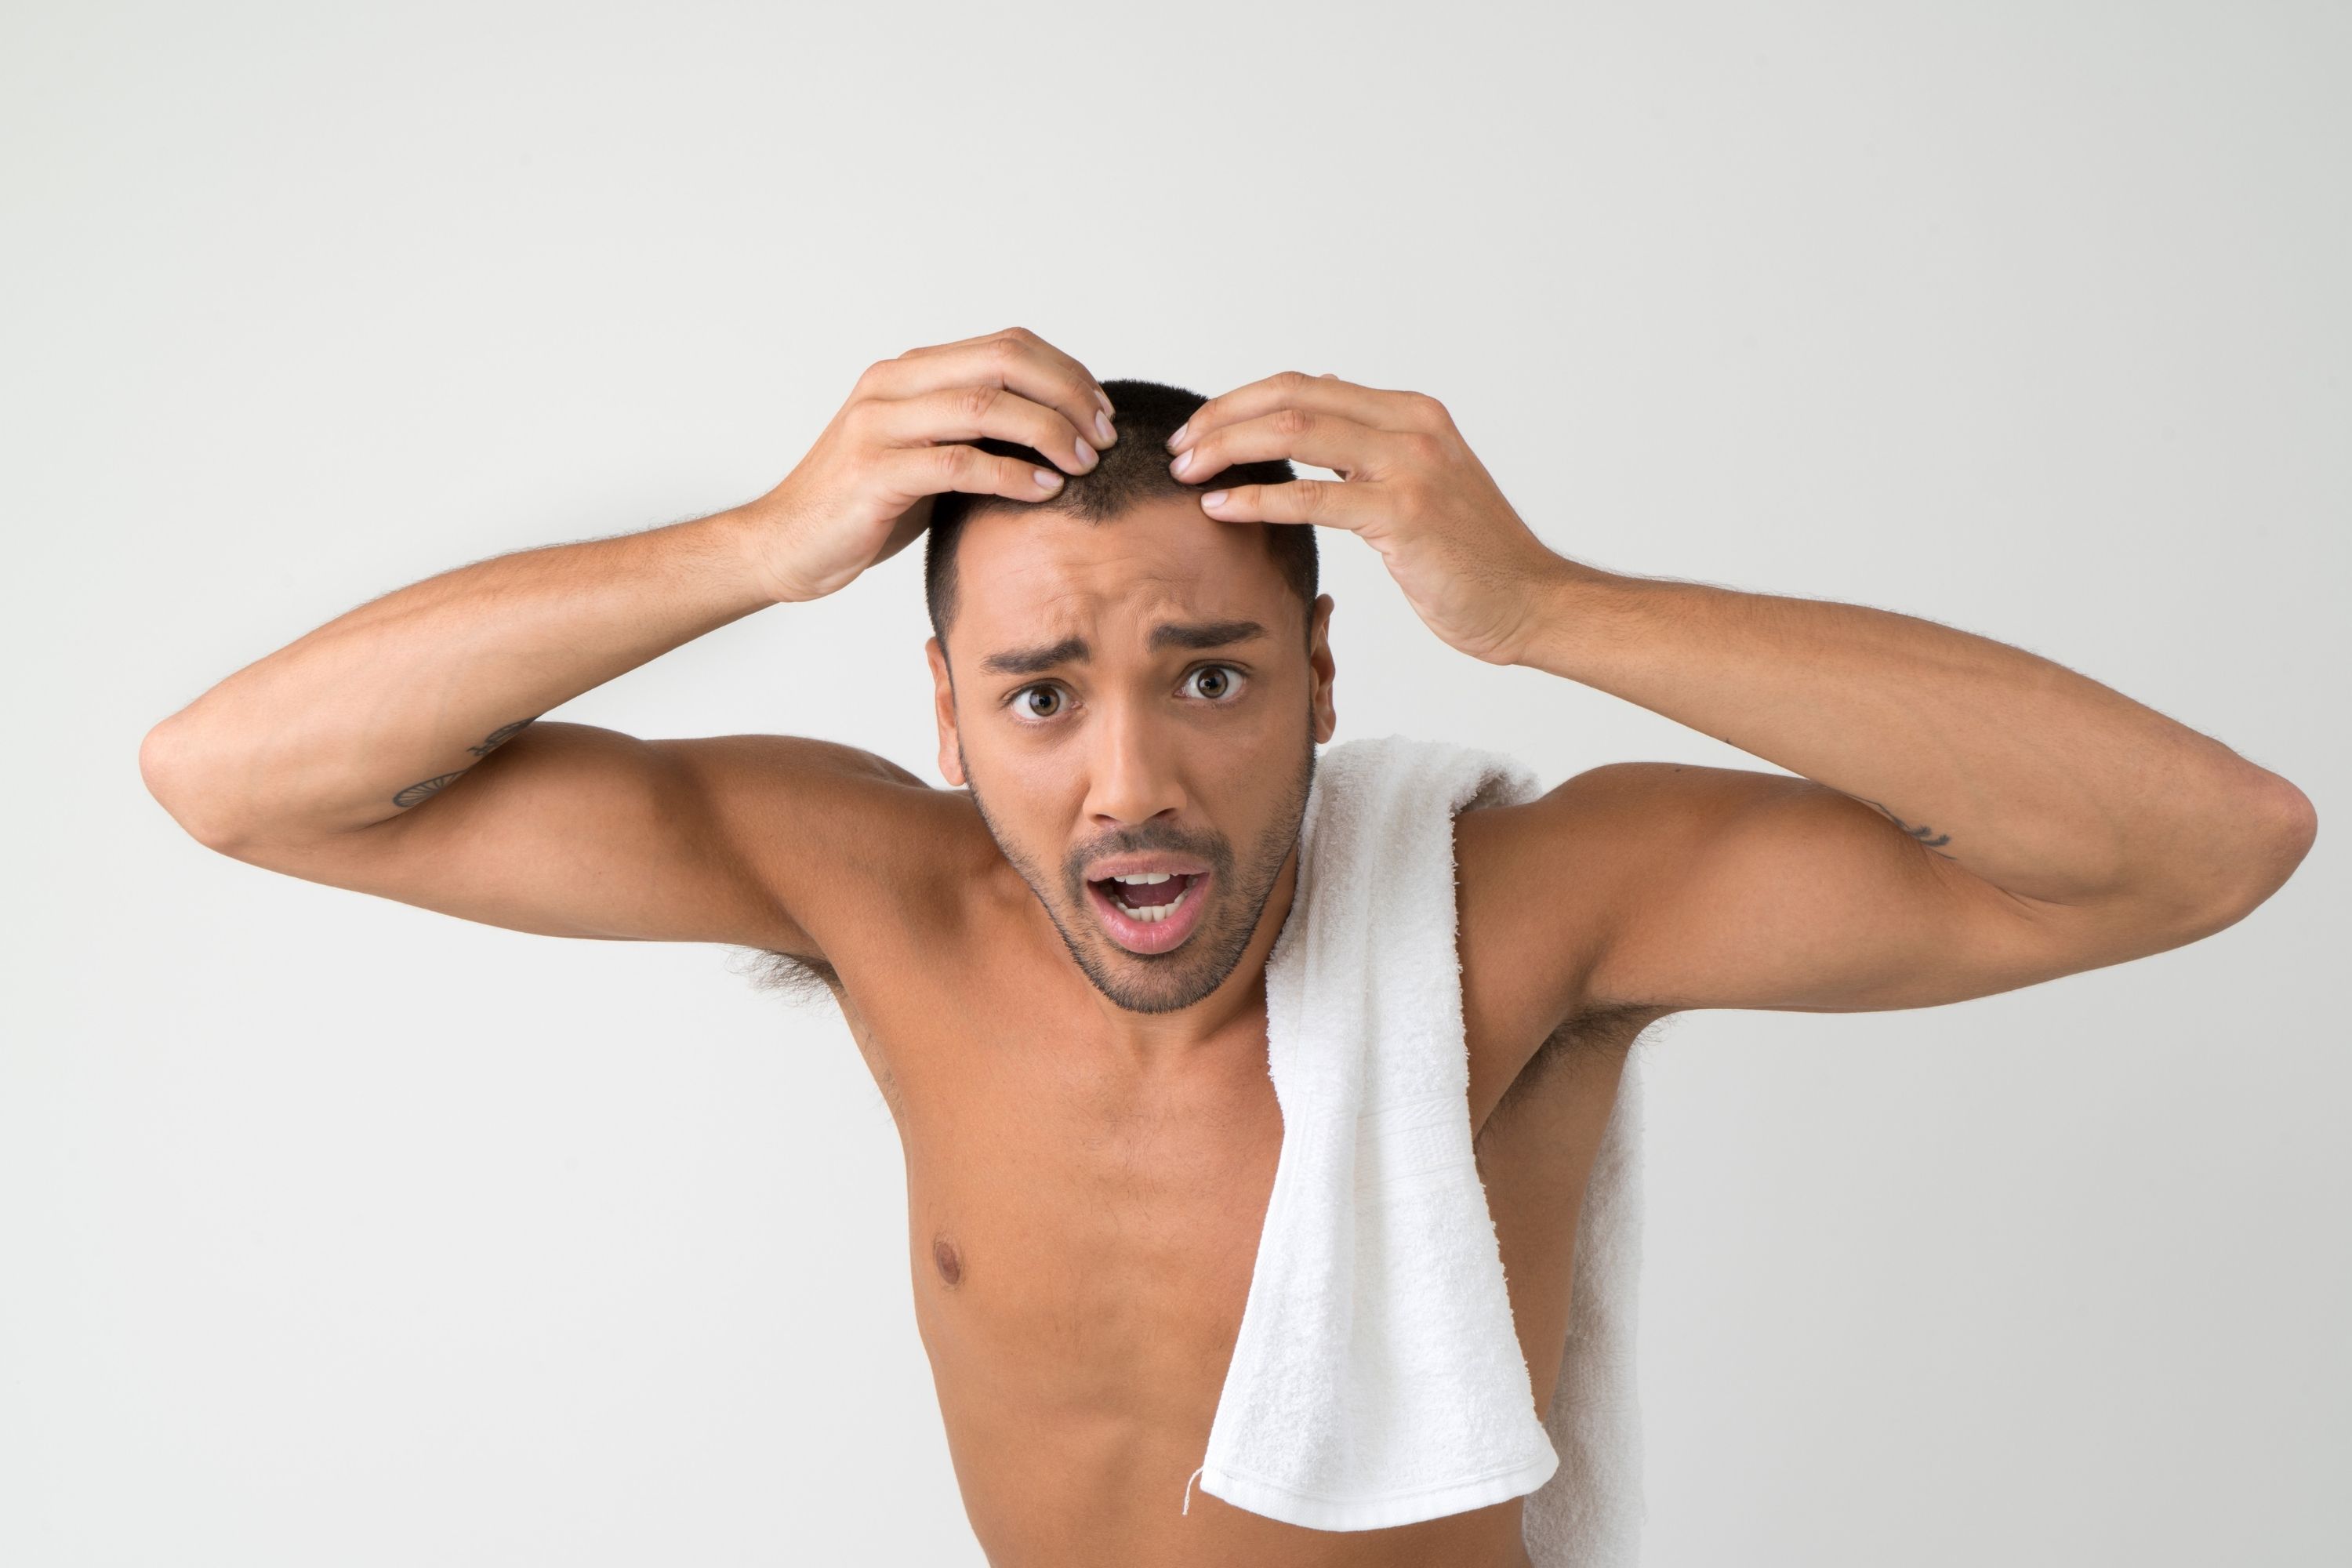 Men's Hair Loss main cause